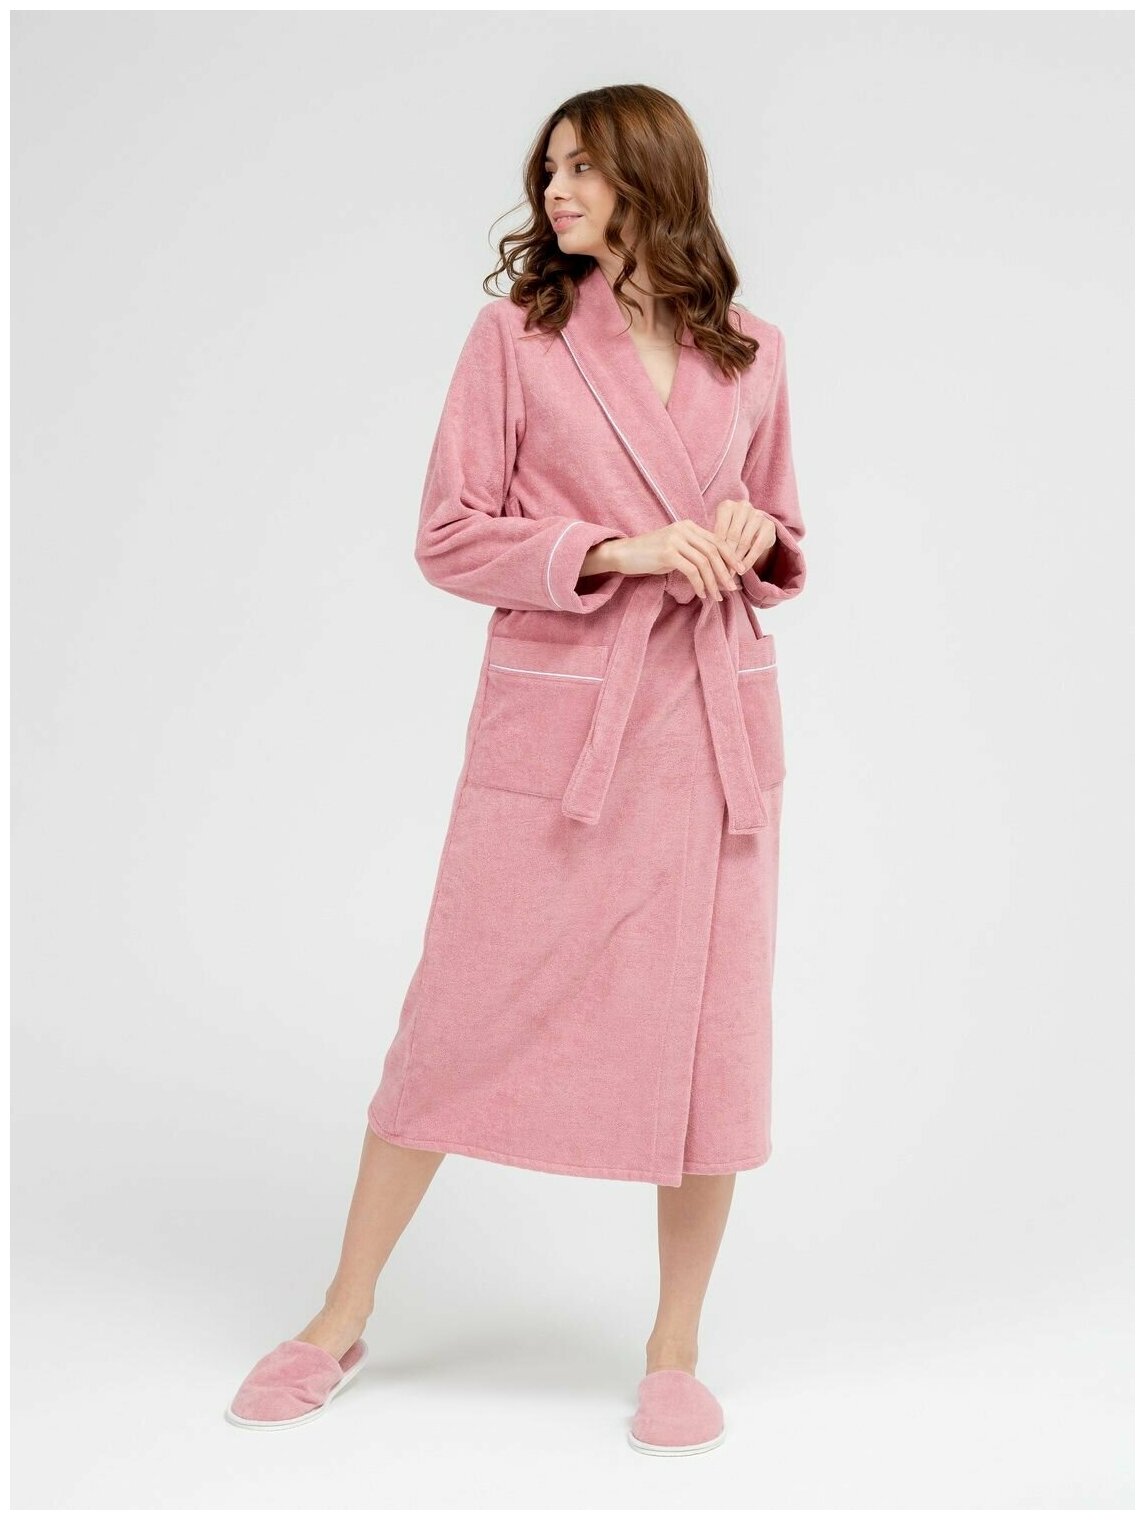 Женский махровый халат с кантом Росхалат, пудрово-розовый. Размер 46-48 - фотография № 2